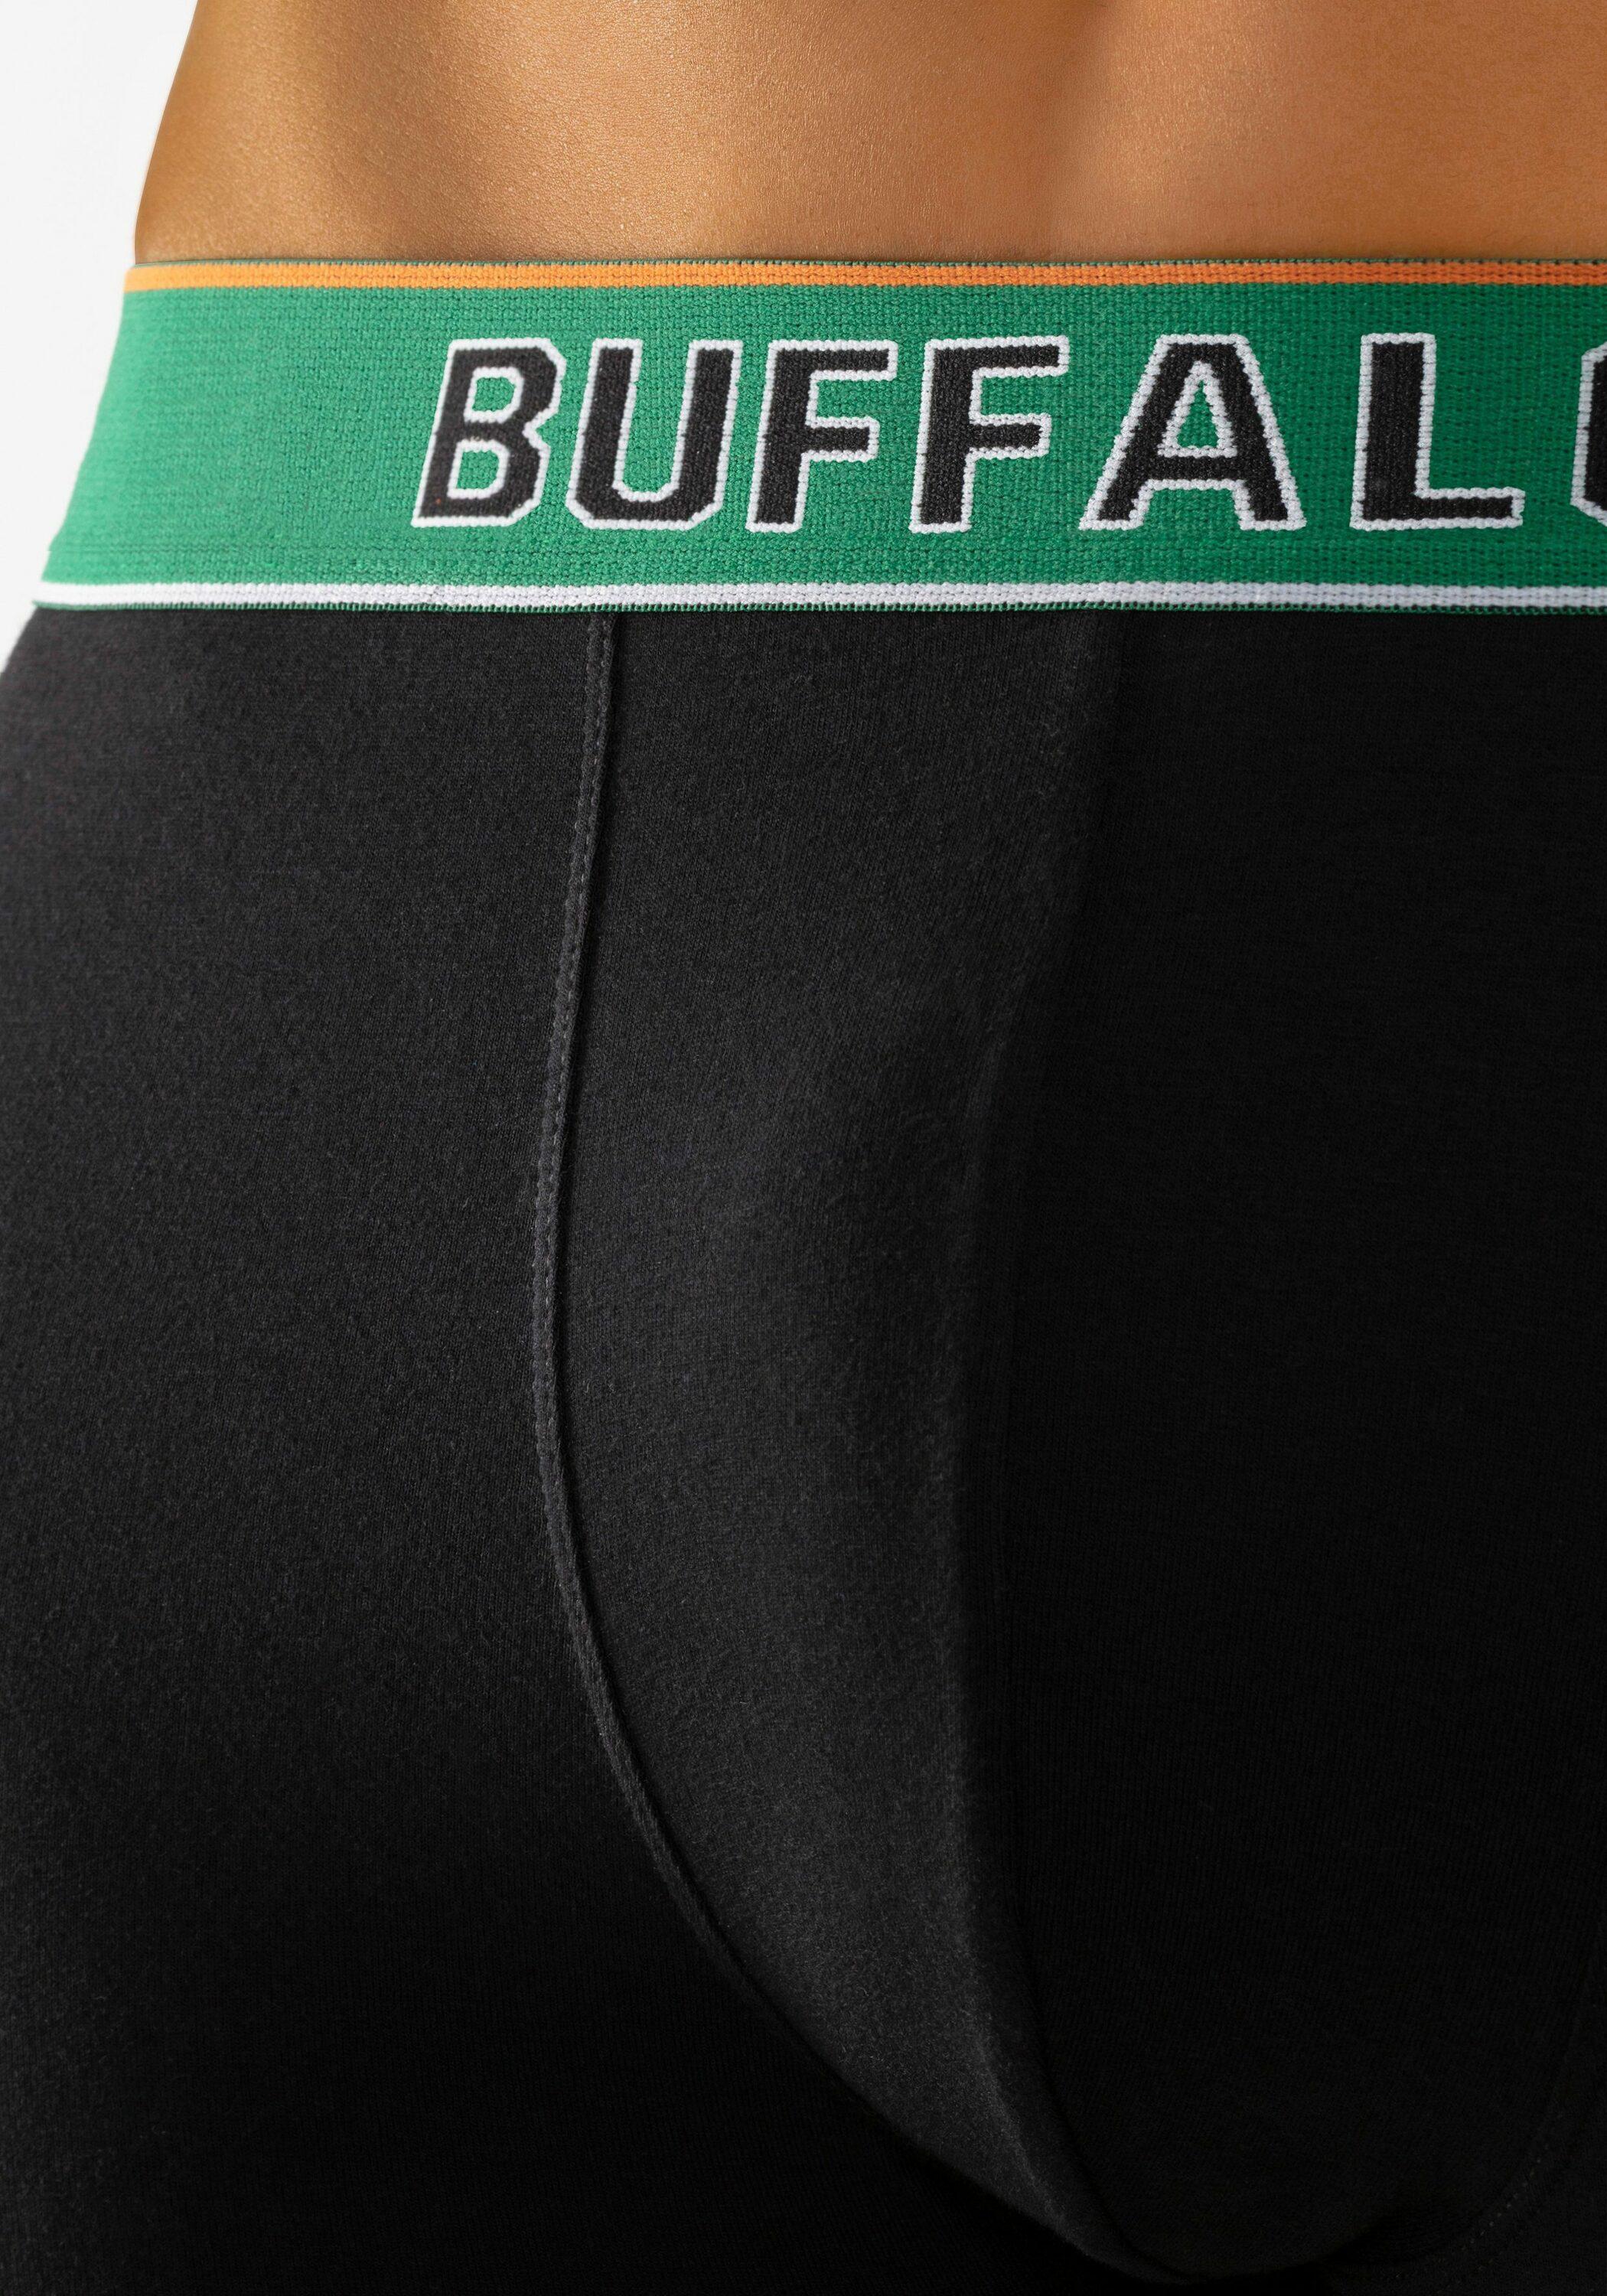 Buffalo Unterhose Herren von im Online Shop schwarz-navy, schwarz-grün schwarz, SportScheck kaufen